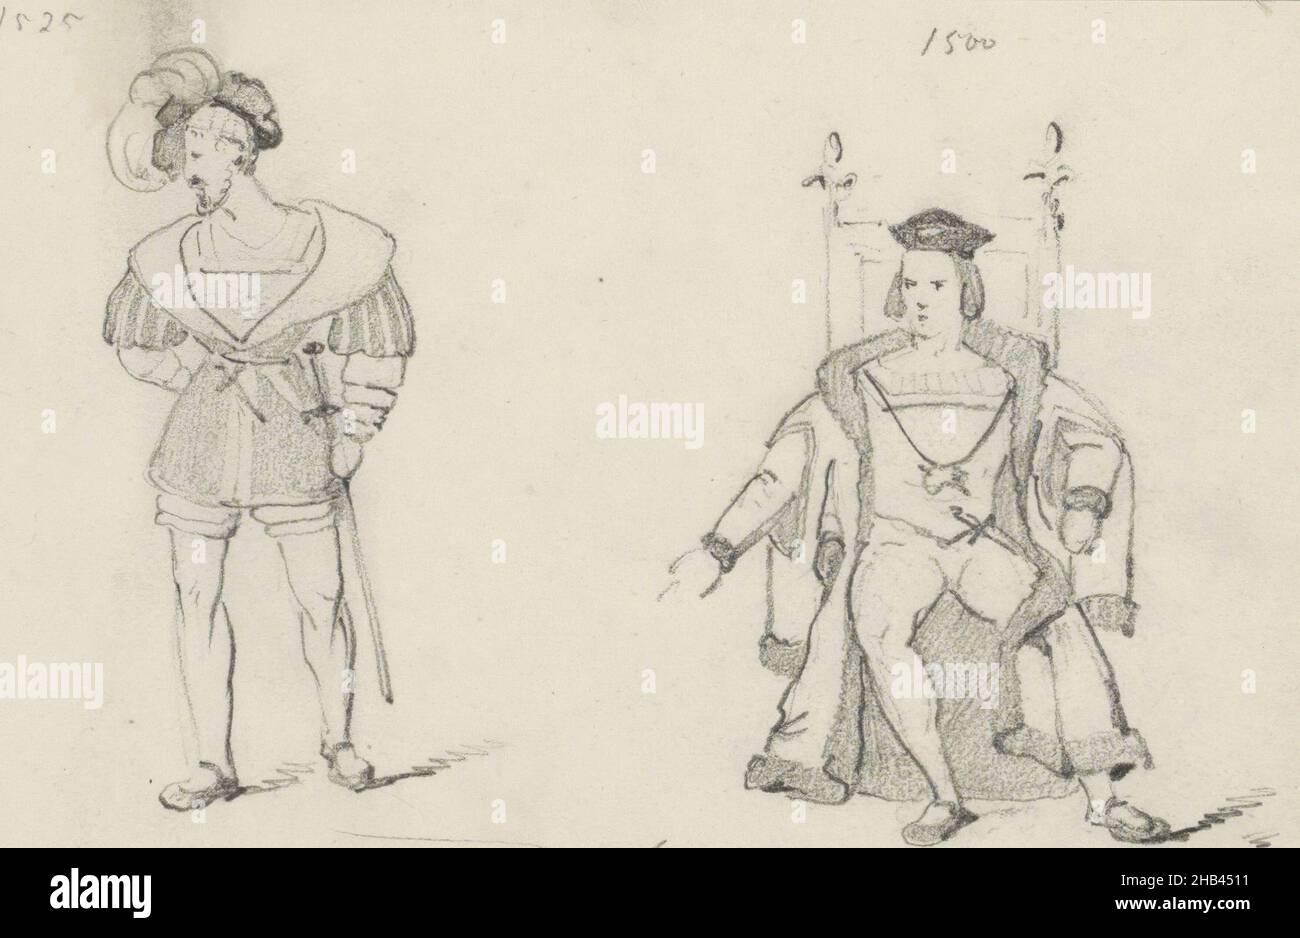 Seite 24 Rekto aus einem Skizzenbuch mit 60 Seiten, zwei Männer in historischer Tracht aus der Zeit 1500-1525, Willem Hendrik Schmidt, 1819 - 1849 Stockfoto